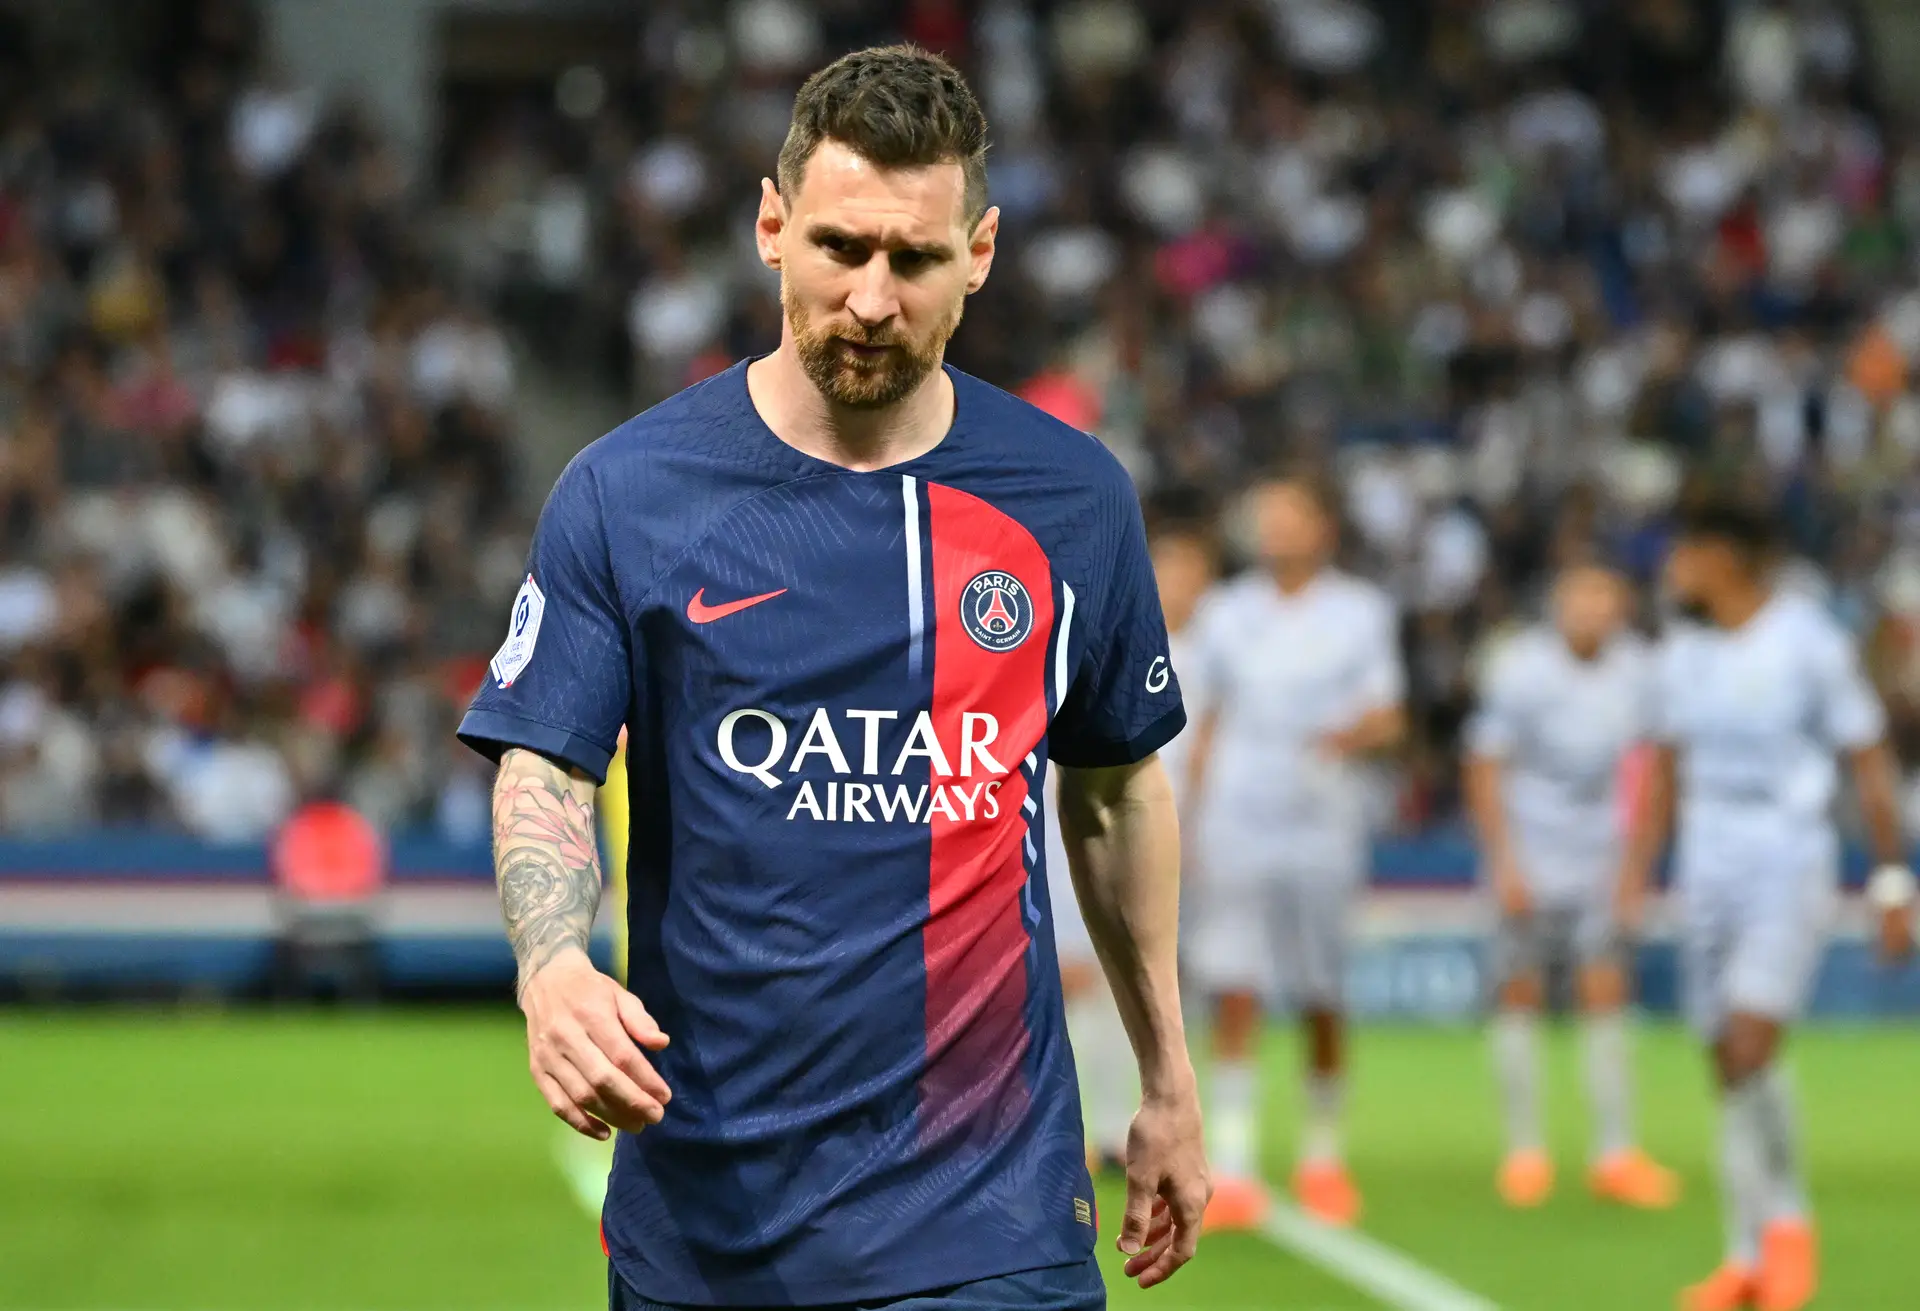 Falta de contrato atrasa venda de ingressos de 'último jogo' de Messi no  Brasil